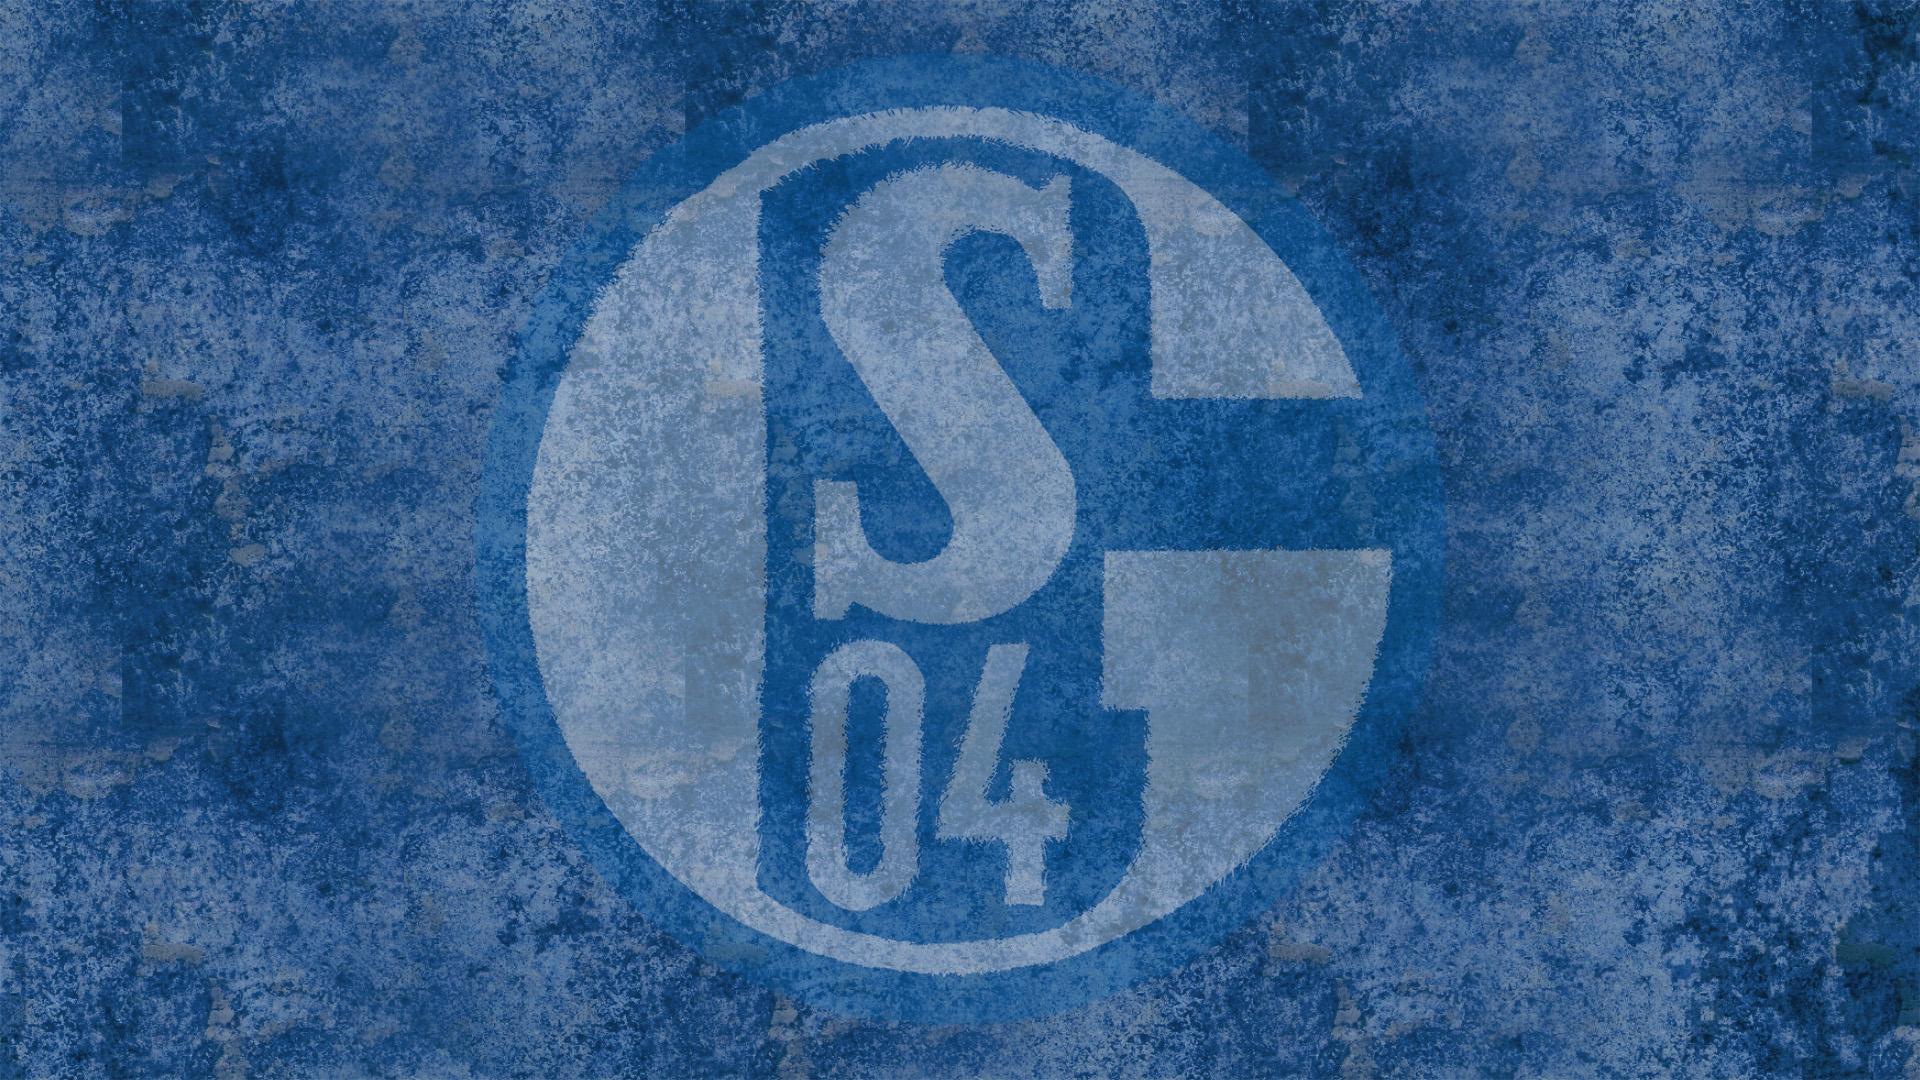 Schalke Wallpaper - Schalke Vs Manchester City , HD Wallpaper & Backgrounds